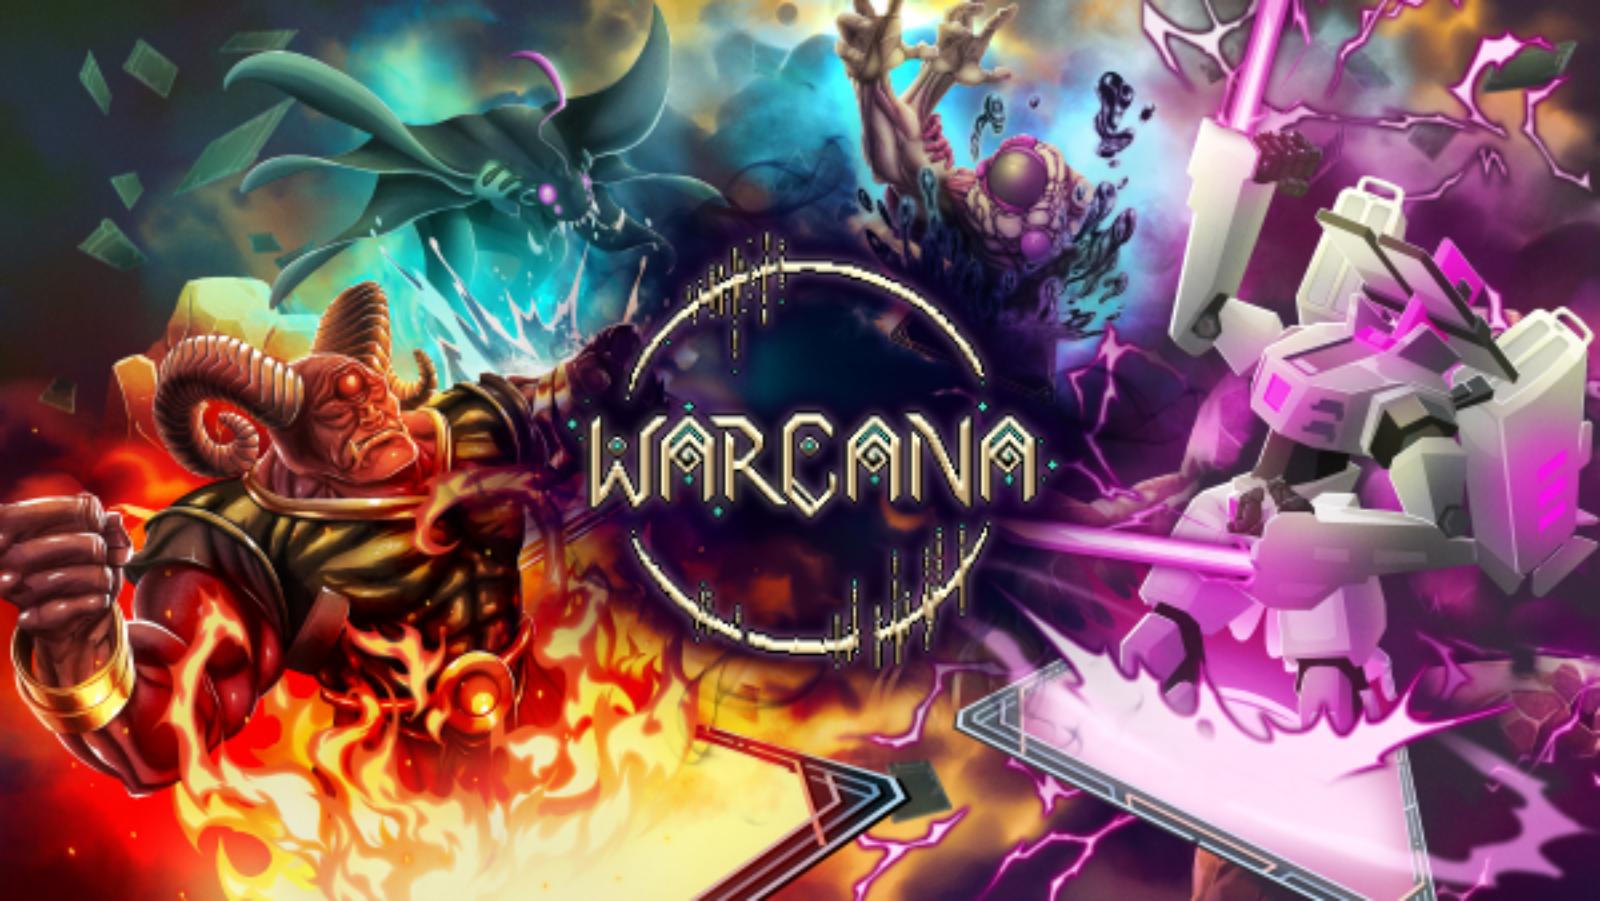 Warcana, juego de RTS de defensa de base, desarrollado por 1000 orks.